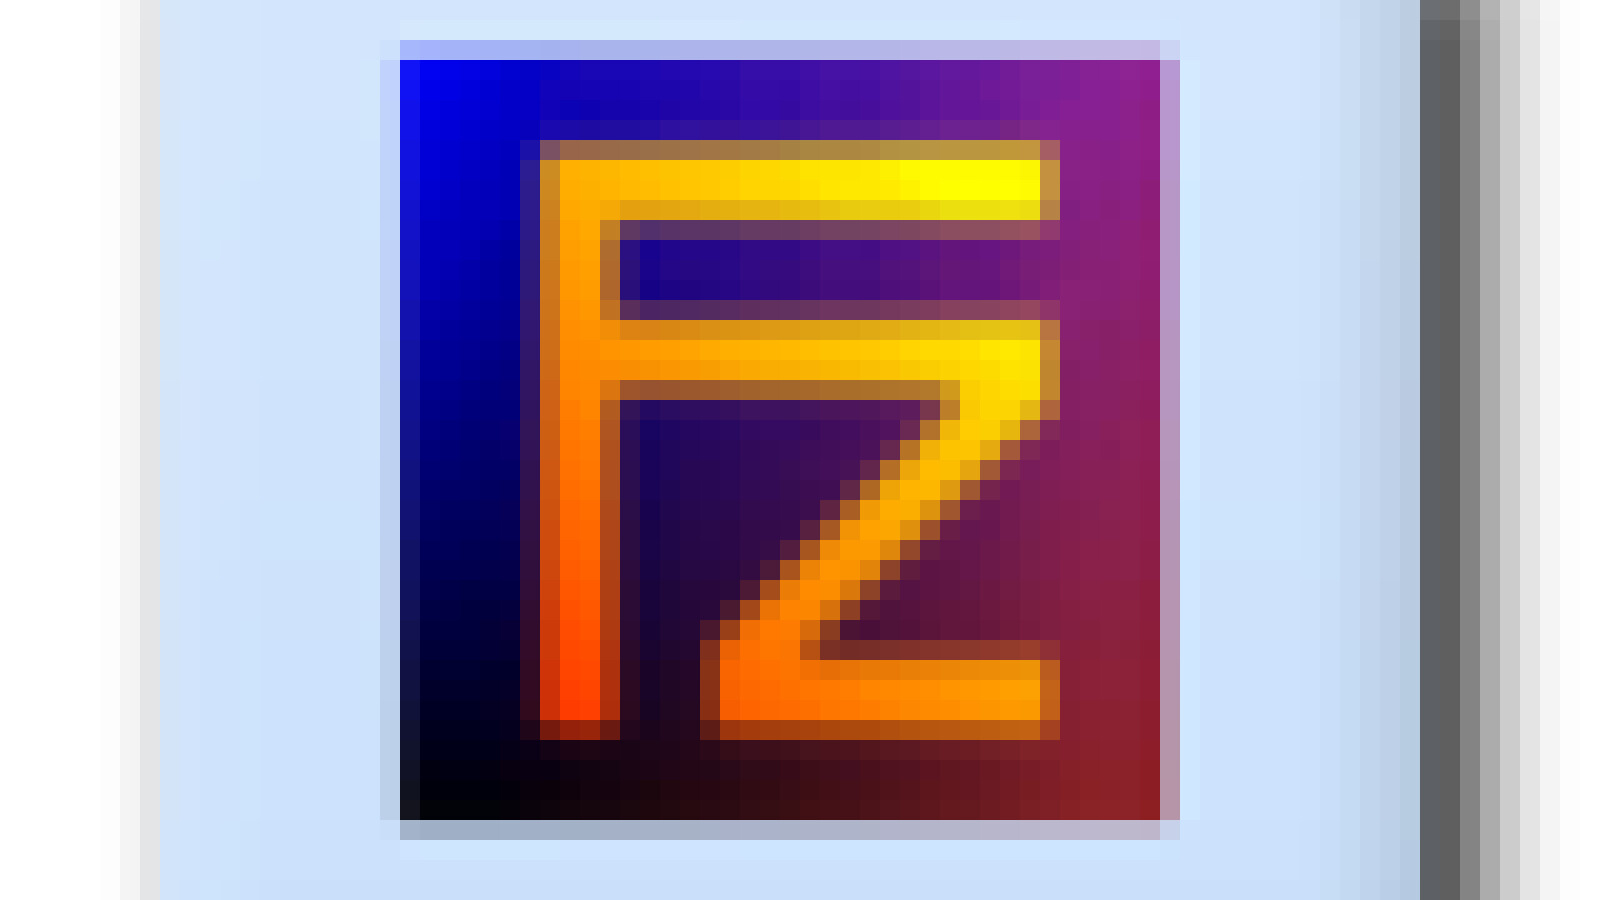 FileZilla 3.65.1 / Pro + Server download the last version for mac